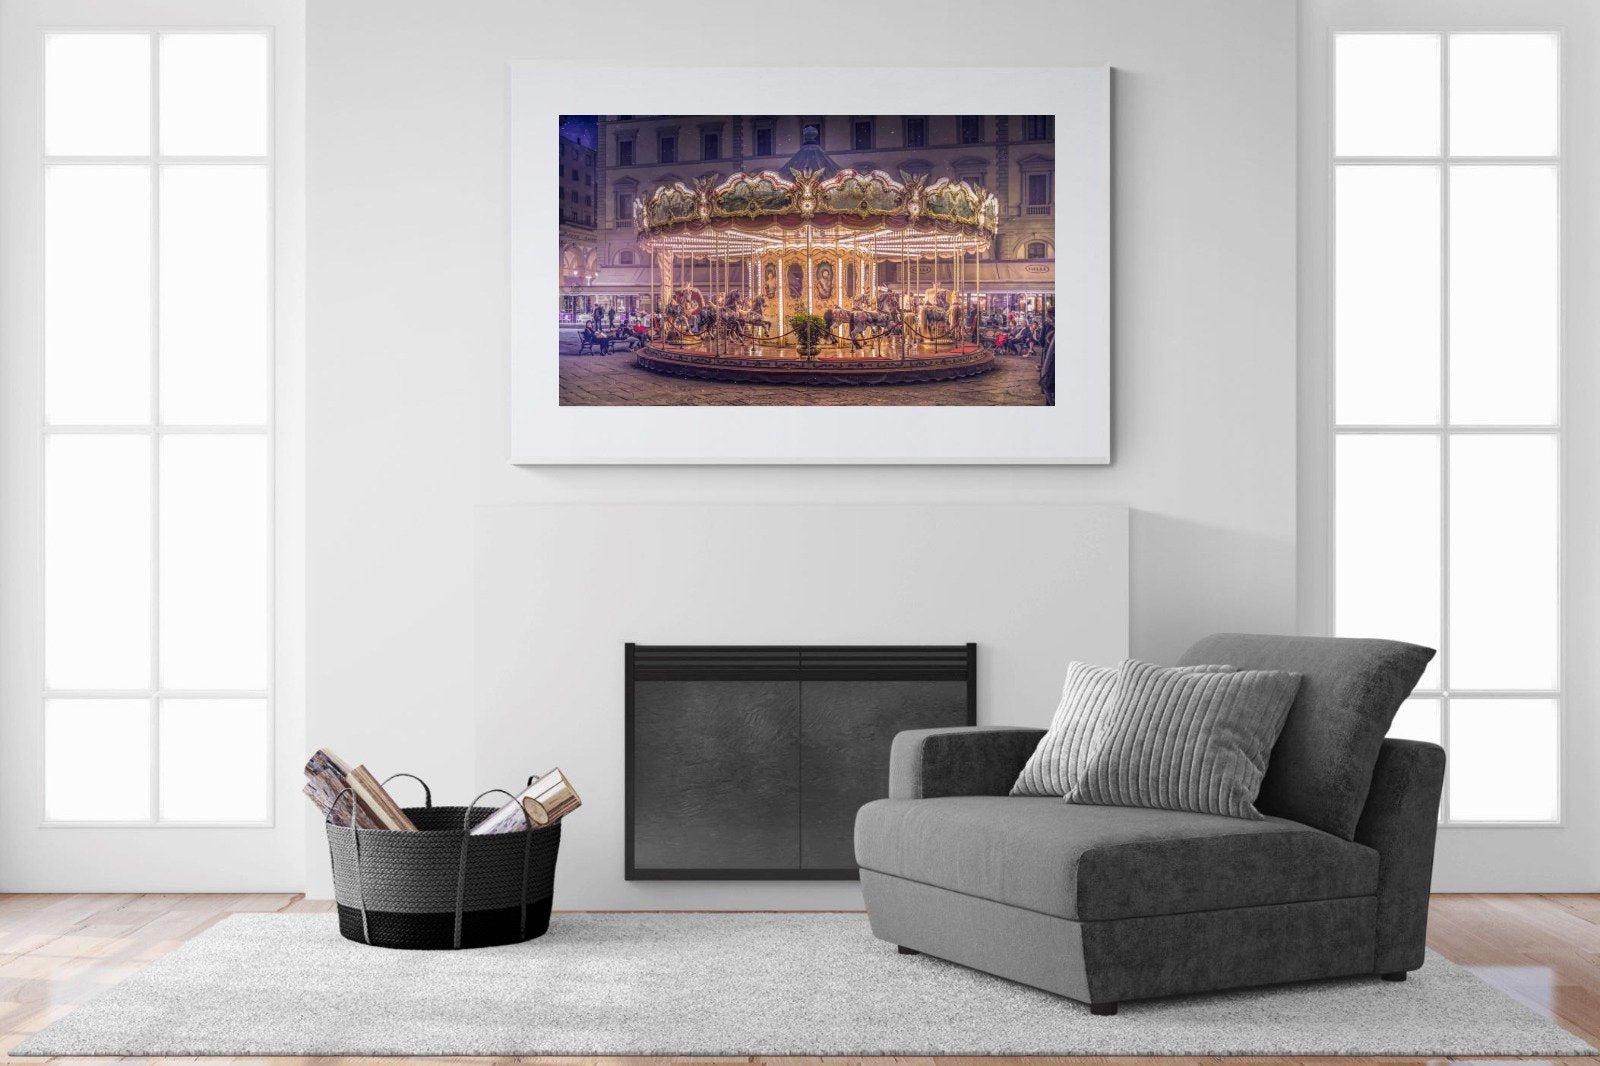 Carousel-Wall_Art-150 x 100cm-Framed Print-White-Pixalot